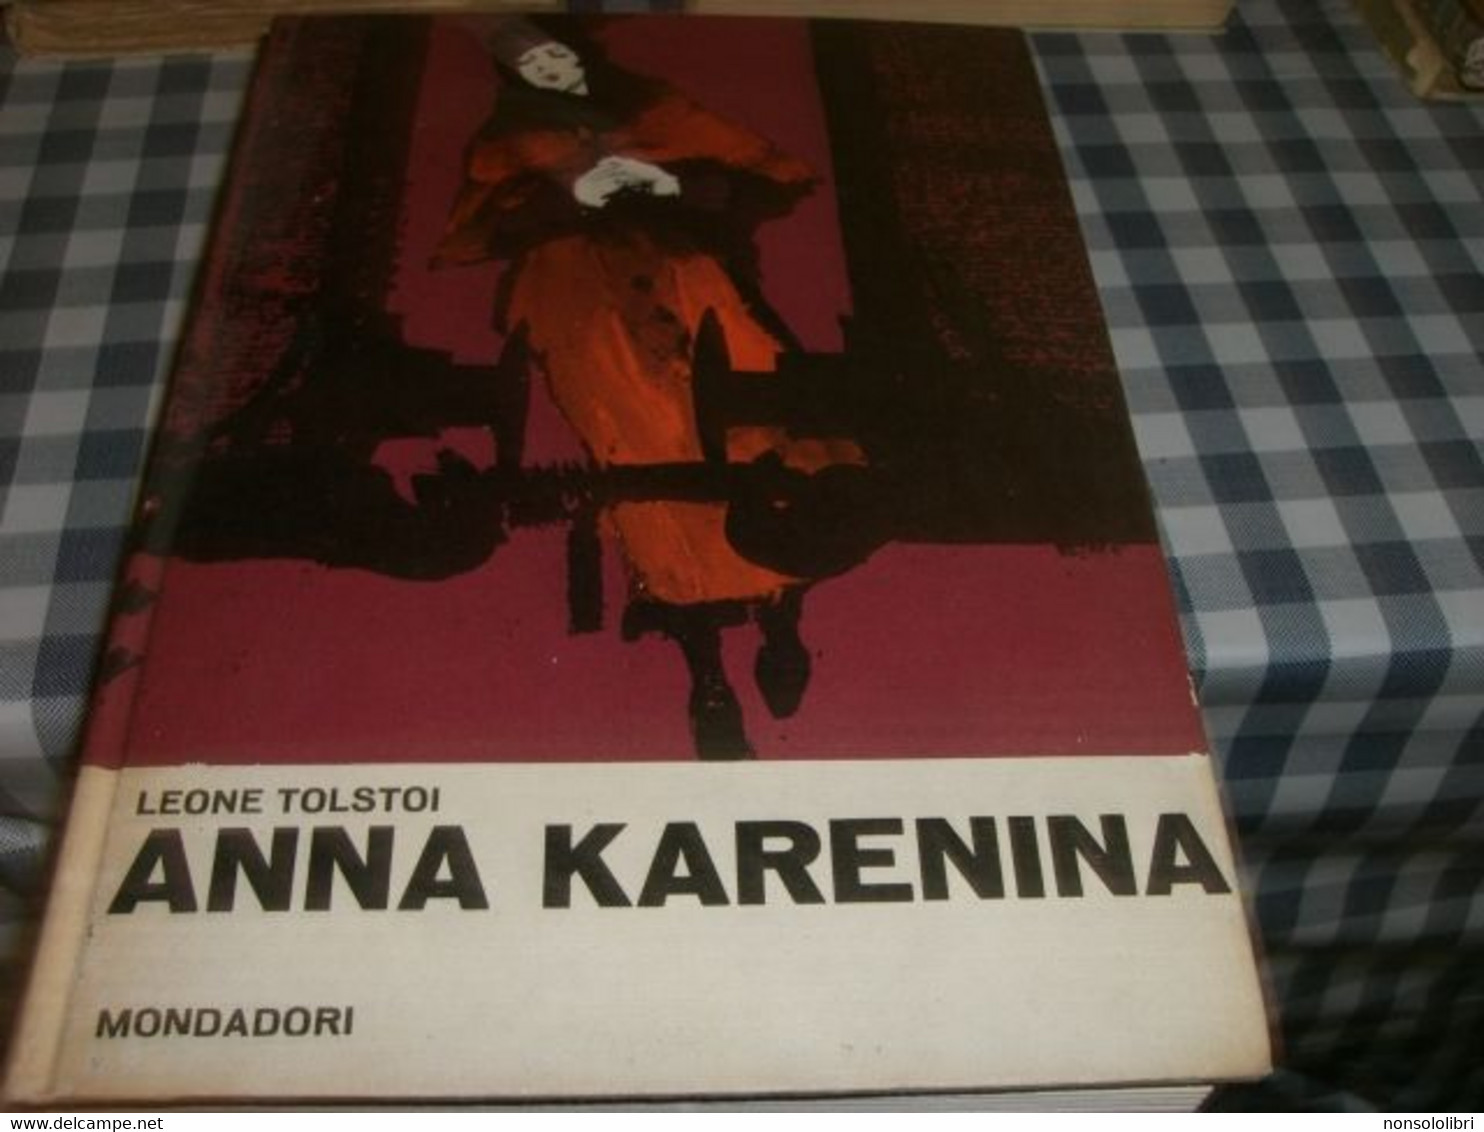 LIBRO ANNA KARENINA -.MONDADORI 1937 - Nouvelles, Contes